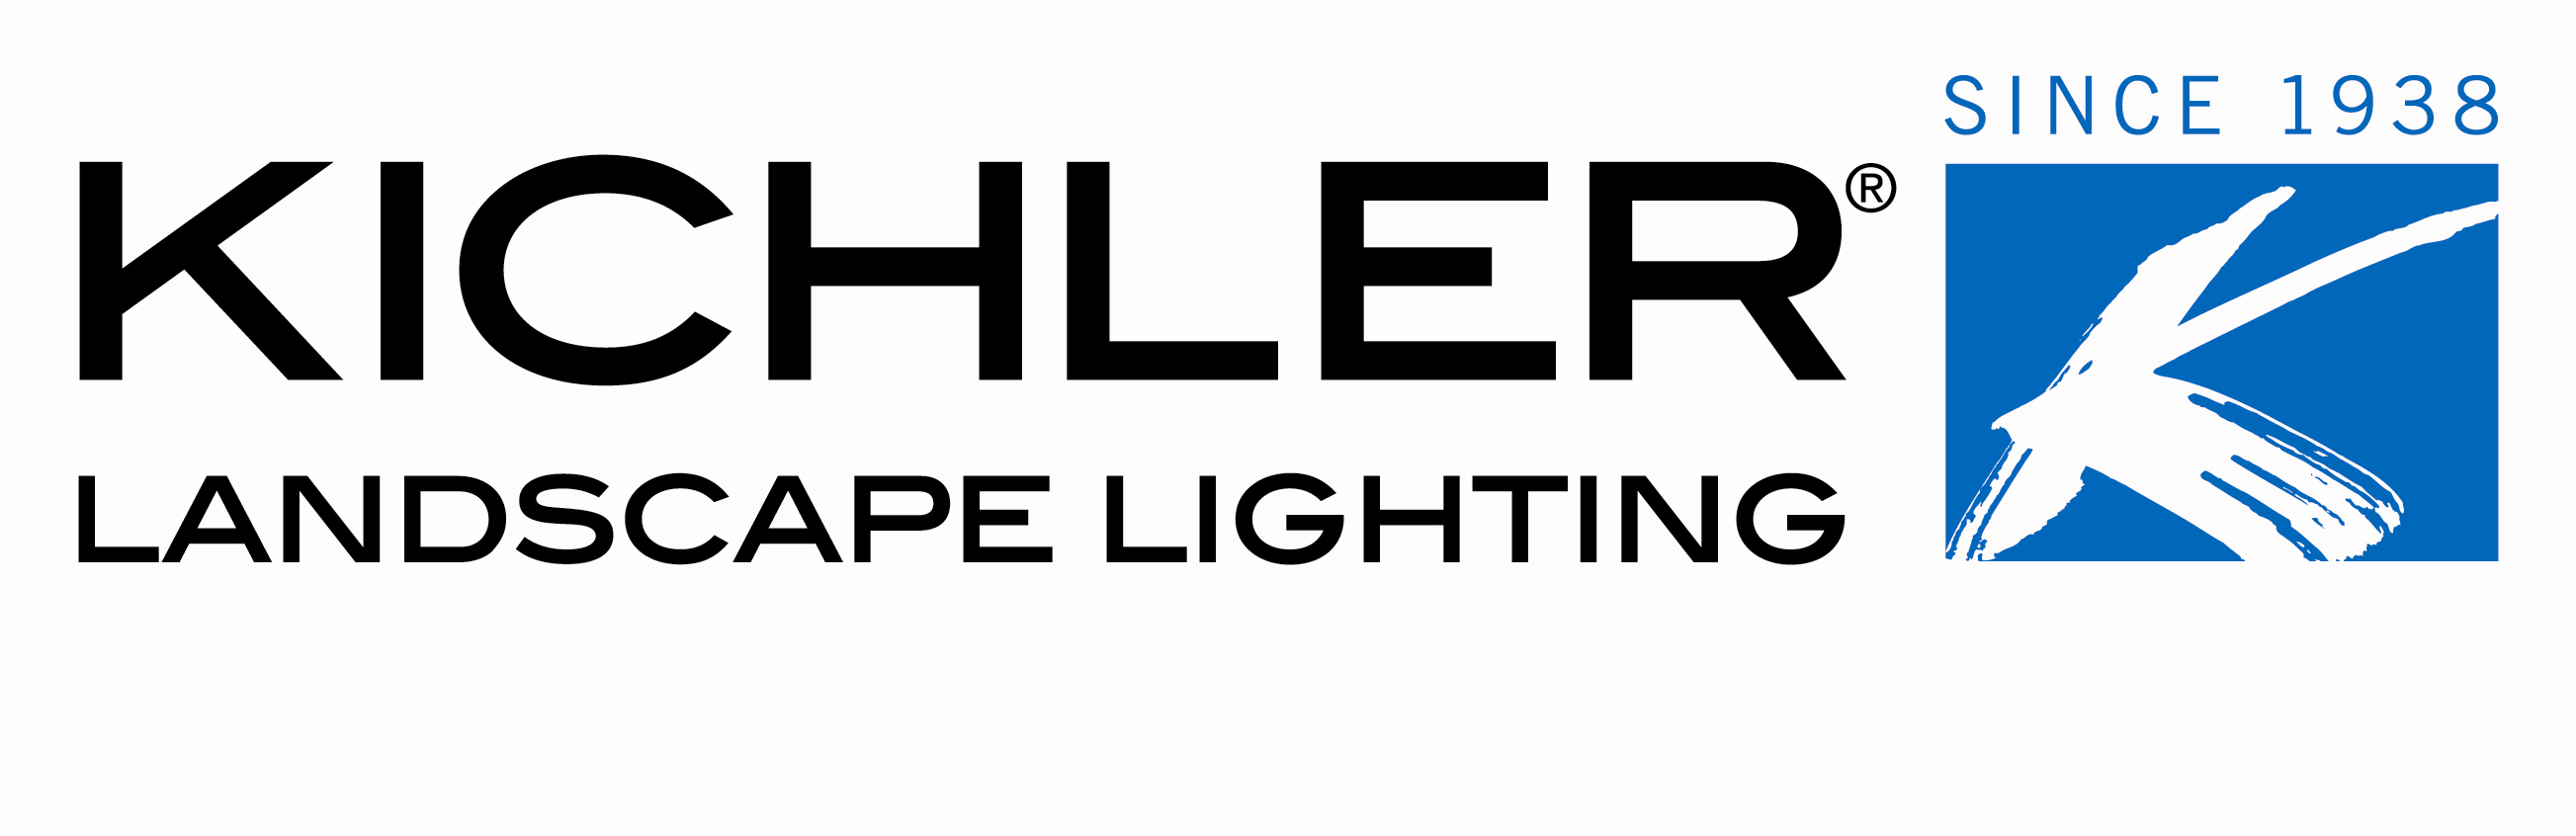 Kichler Logo - Outdoor Lighting & Water Features